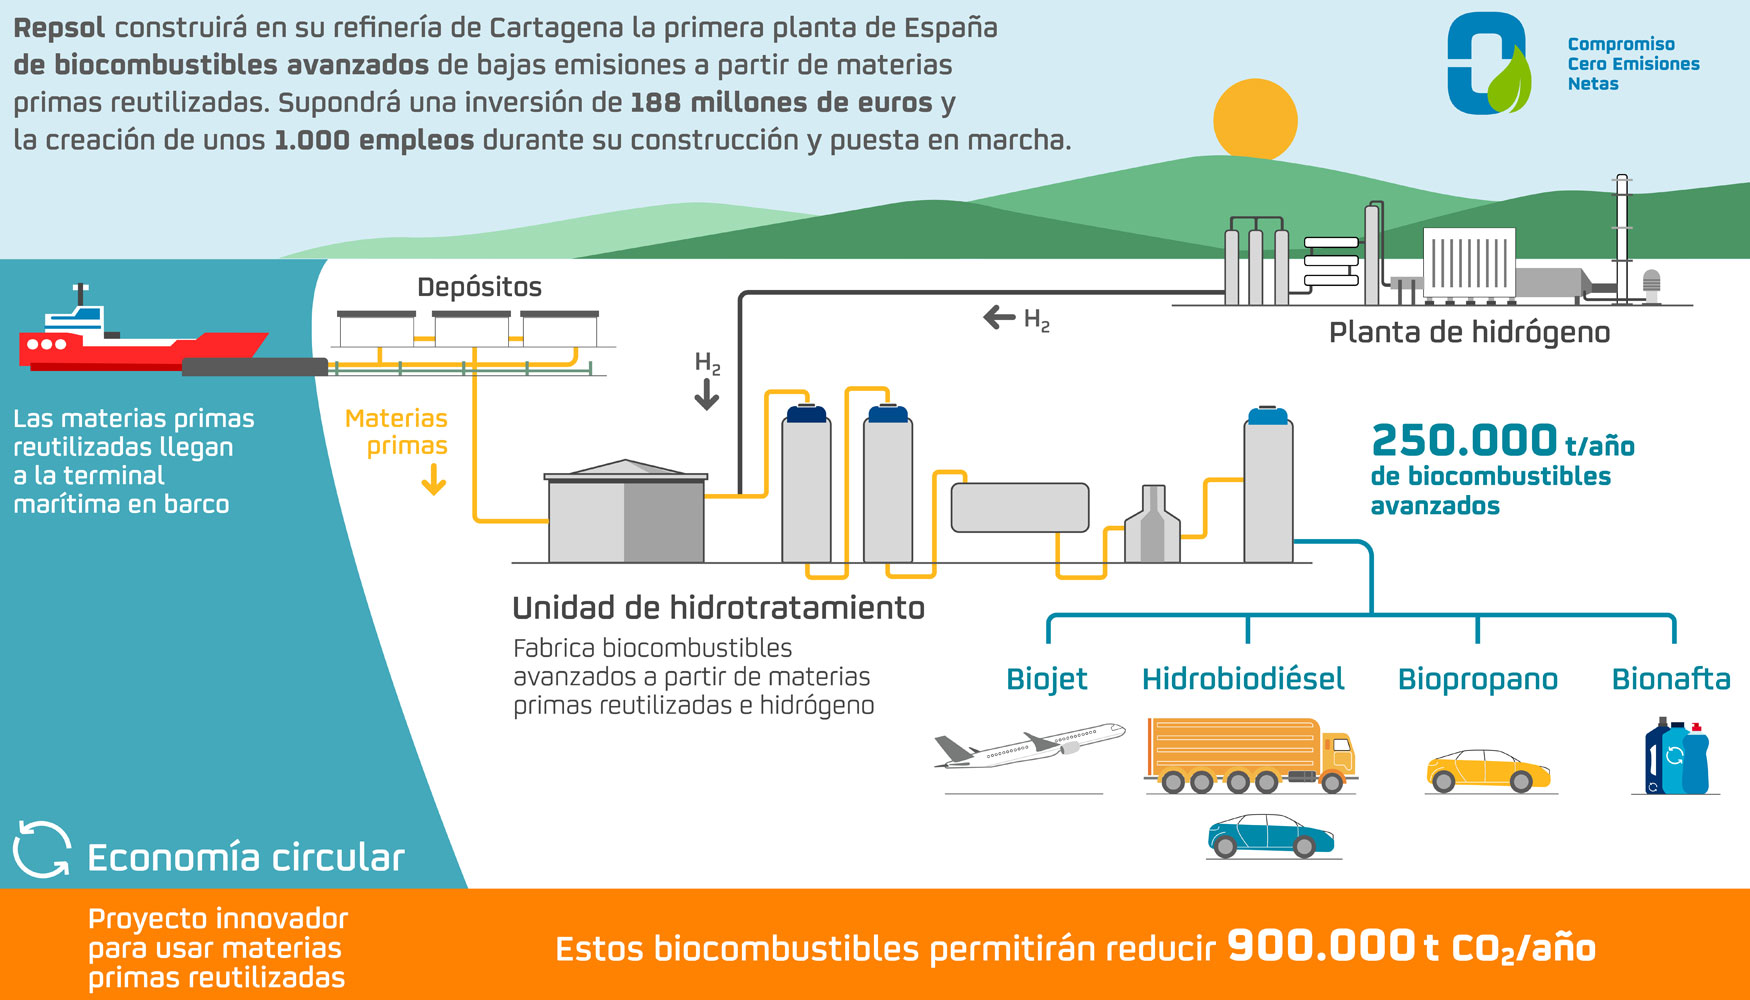 Repsol construir en su refinera de Cartagena la primera planta de produccin de biocombustibles avanzados de Espaa